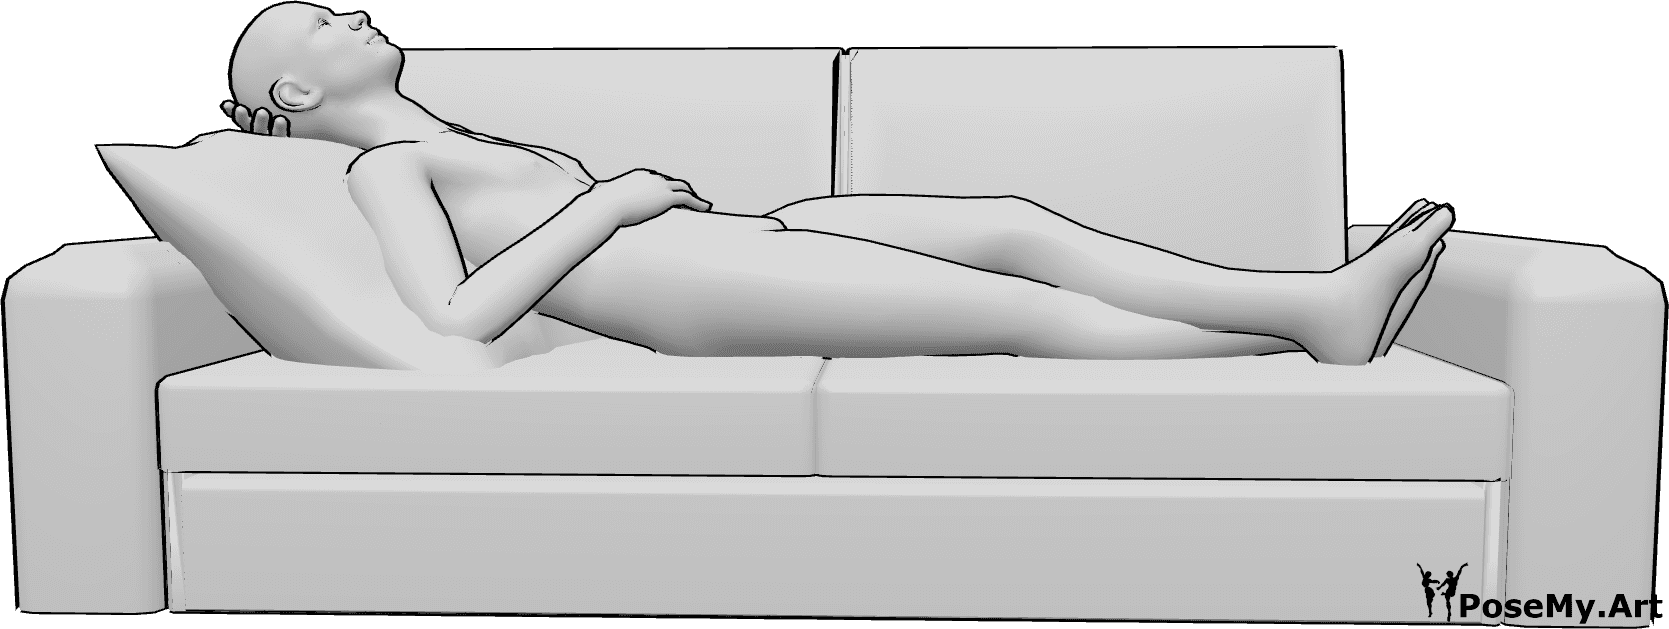 Referencia de poses- Hombre tumbado en posición de reposo - Varón tumbado en el sofá y descansando, con las piernas cruzadas y mirando hacia arriba.